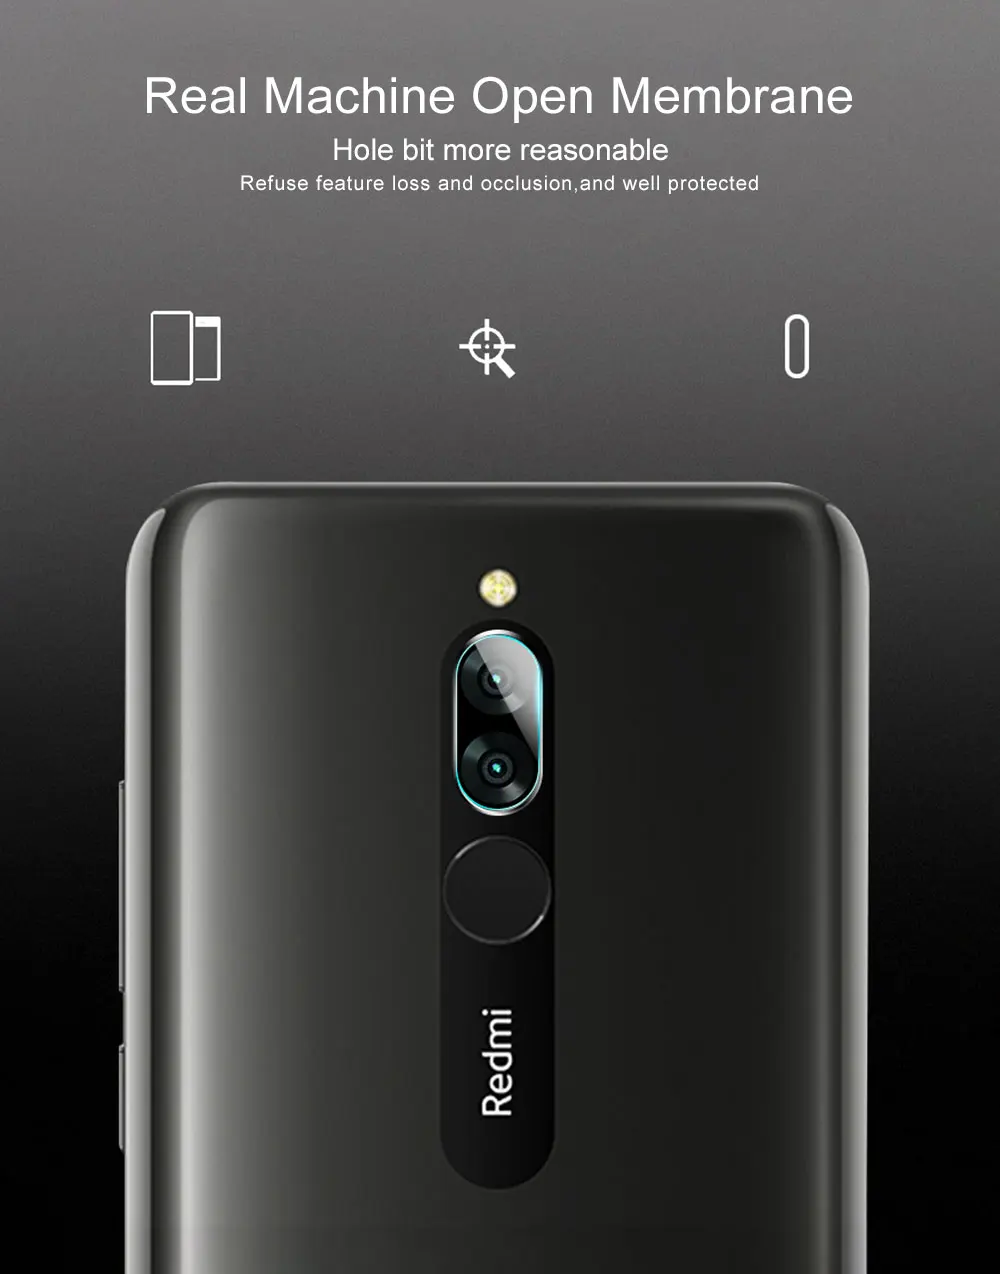 2 шт. пленка для объектива камеры для Redmi 8 8A, защитная пленка для объектива камеры из закаленного стекла для Xiaomi Redmi 8 8A 8 A, стекло для глобальной камеры